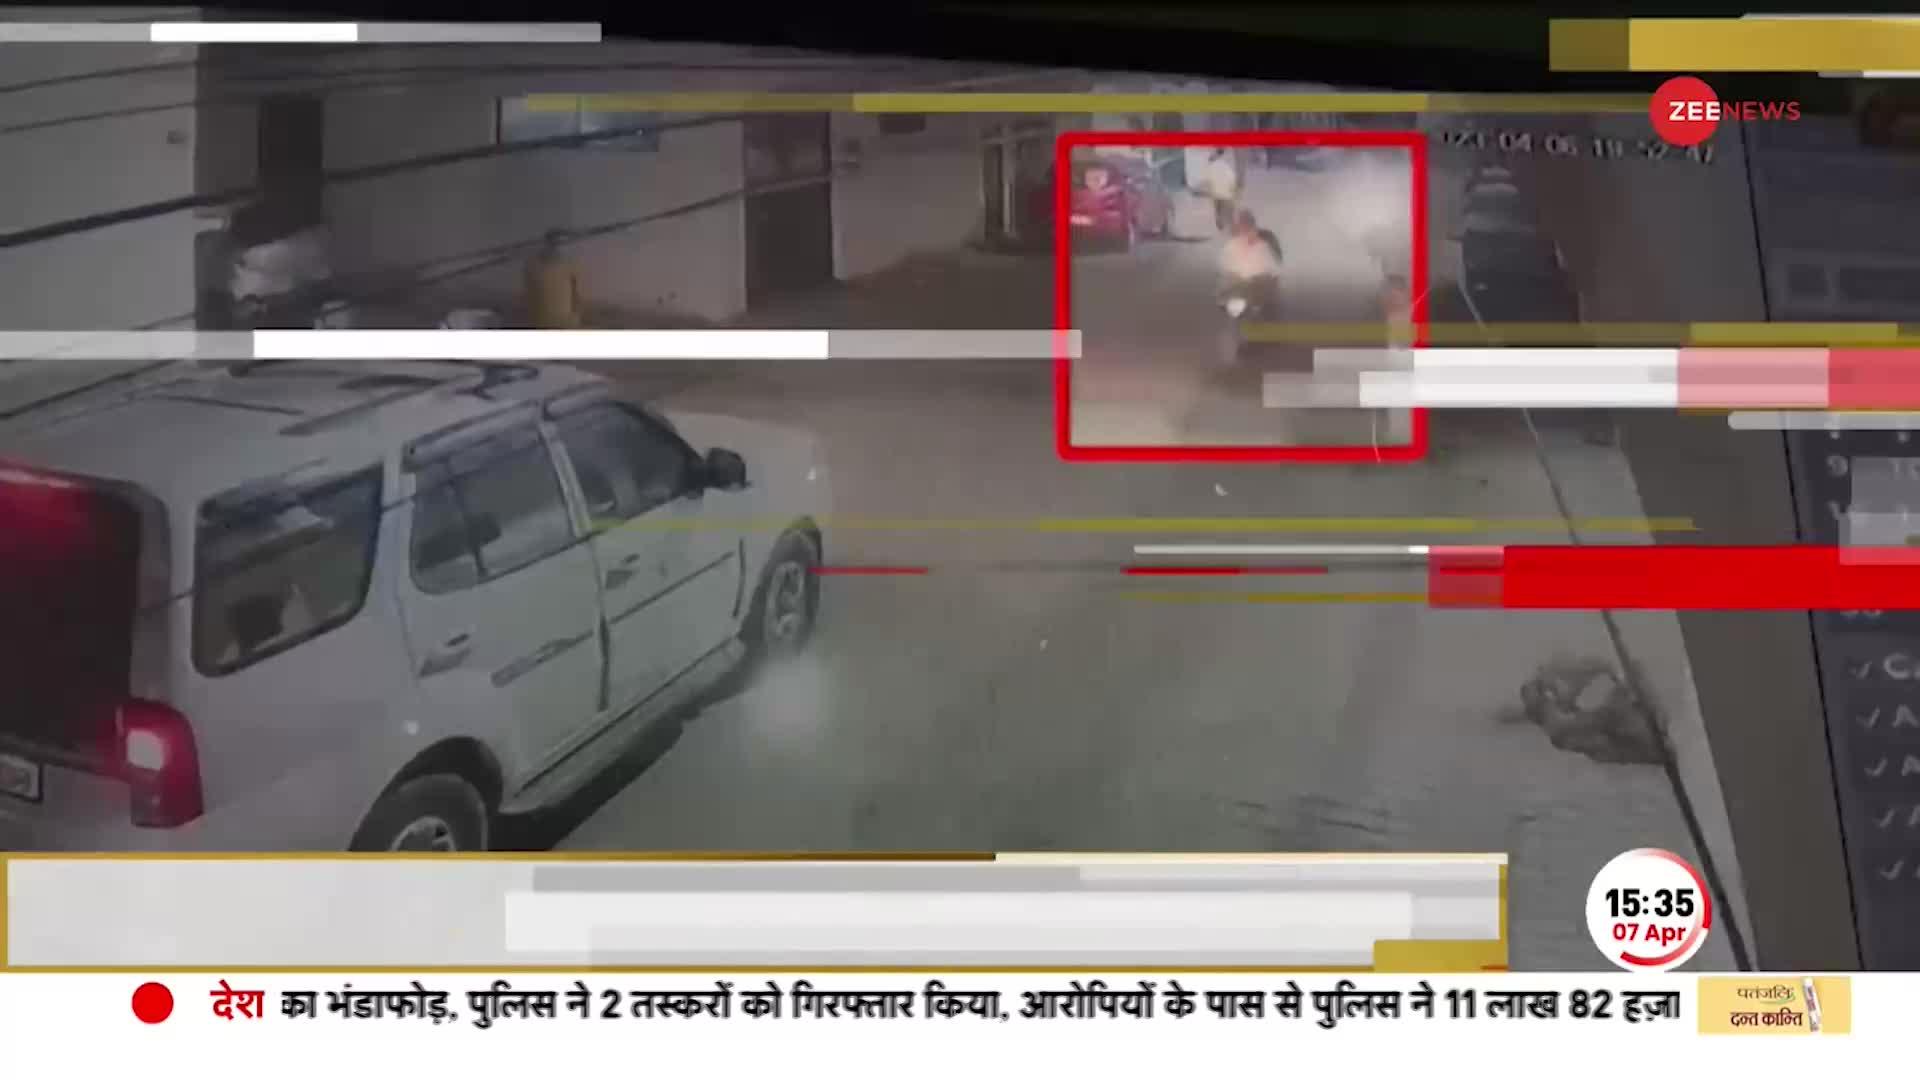 Bomb Attack Prayagraj: BJP नेता के बेटे पर जानलेवा हमला, CCTV में कैद हुए प्रयागराज के बमबाज